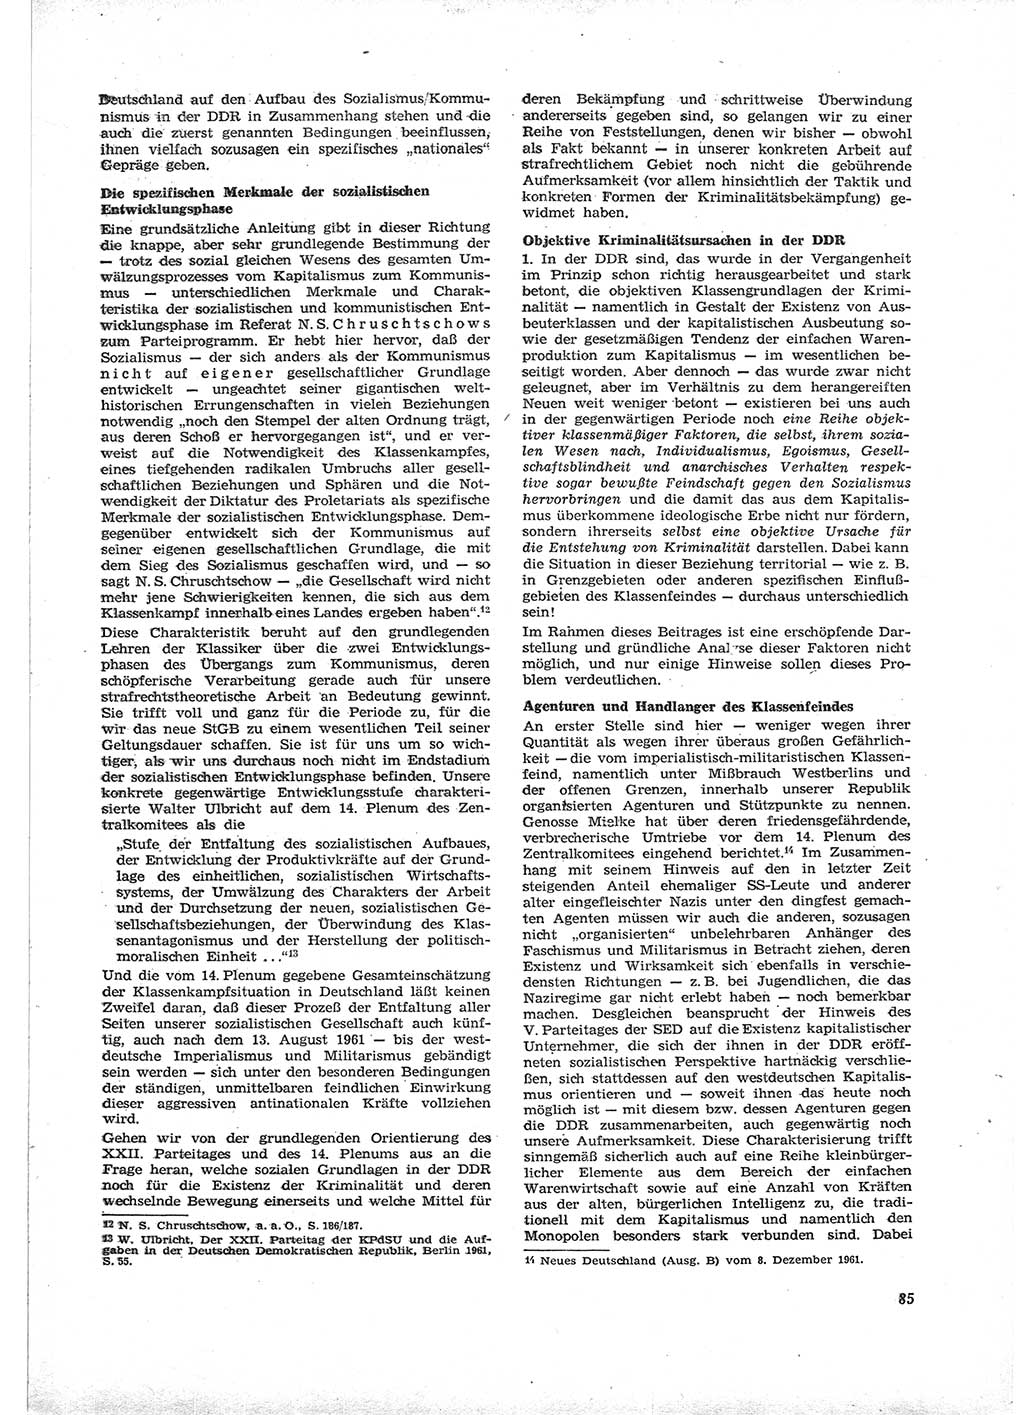 Neue Justiz (NJ), Zeitschrift für Recht und Rechtswissenschaft [Deutsche Demokratische Republik (DDR)], 16. Jahrgang 1962, Seite 85 (NJ DDR 1962, S. 85)